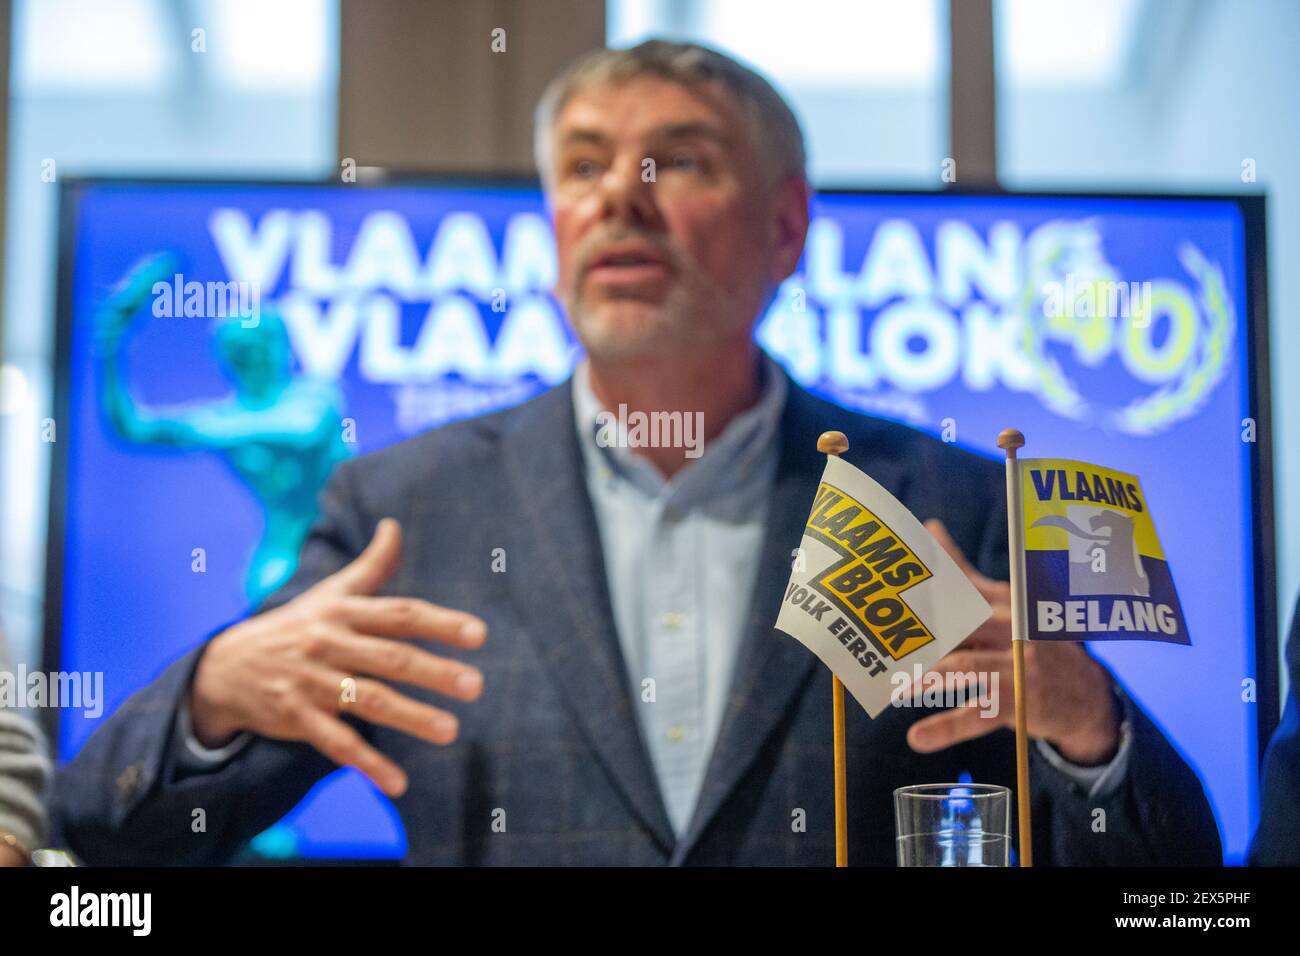 Film de Dewinter de Vlaams Belang photographié pendant un moment de presse concernant Le quarantième anniversaire du parti d'extrême droite flamand Vlaams Belang qui commencent Banque D'Images